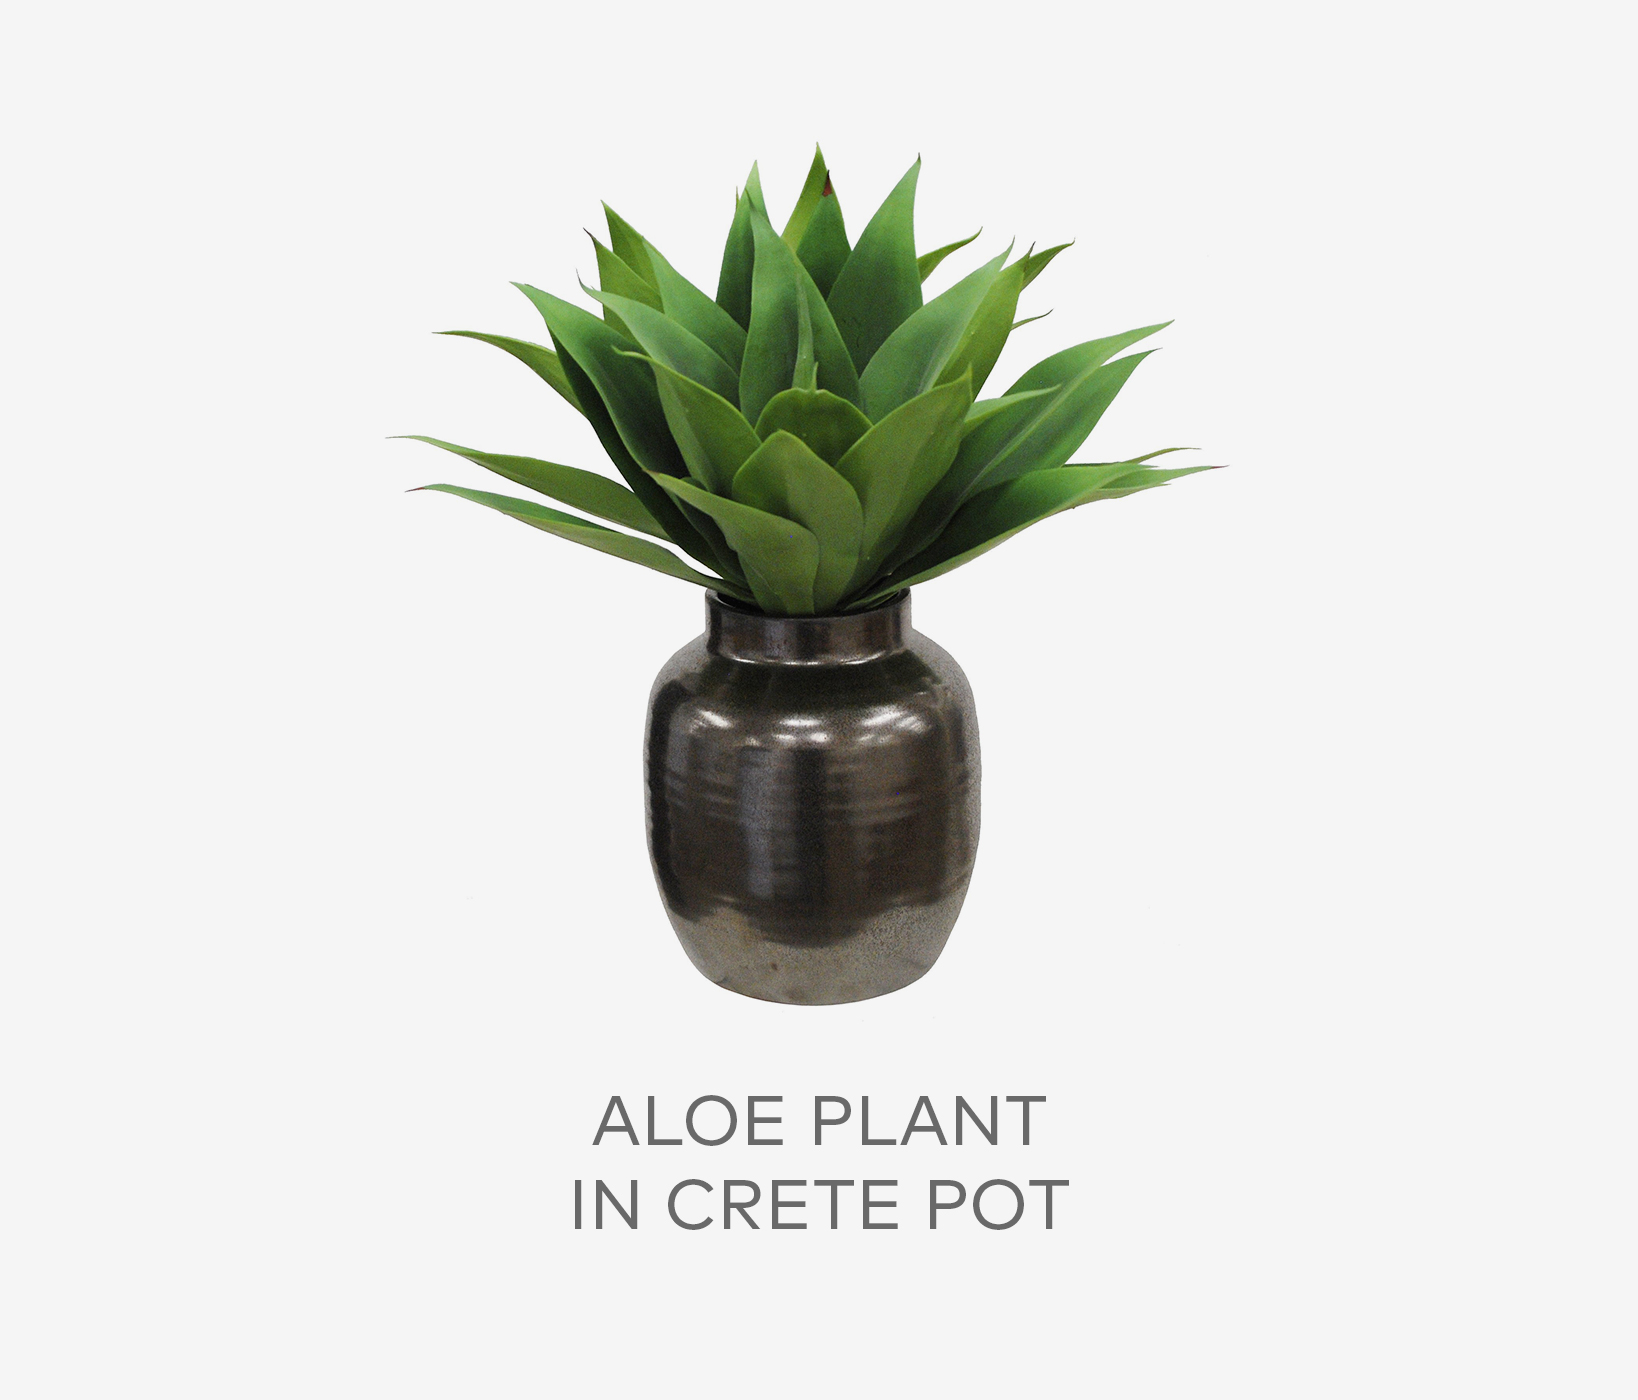 Aloe Plant in Crete Pot